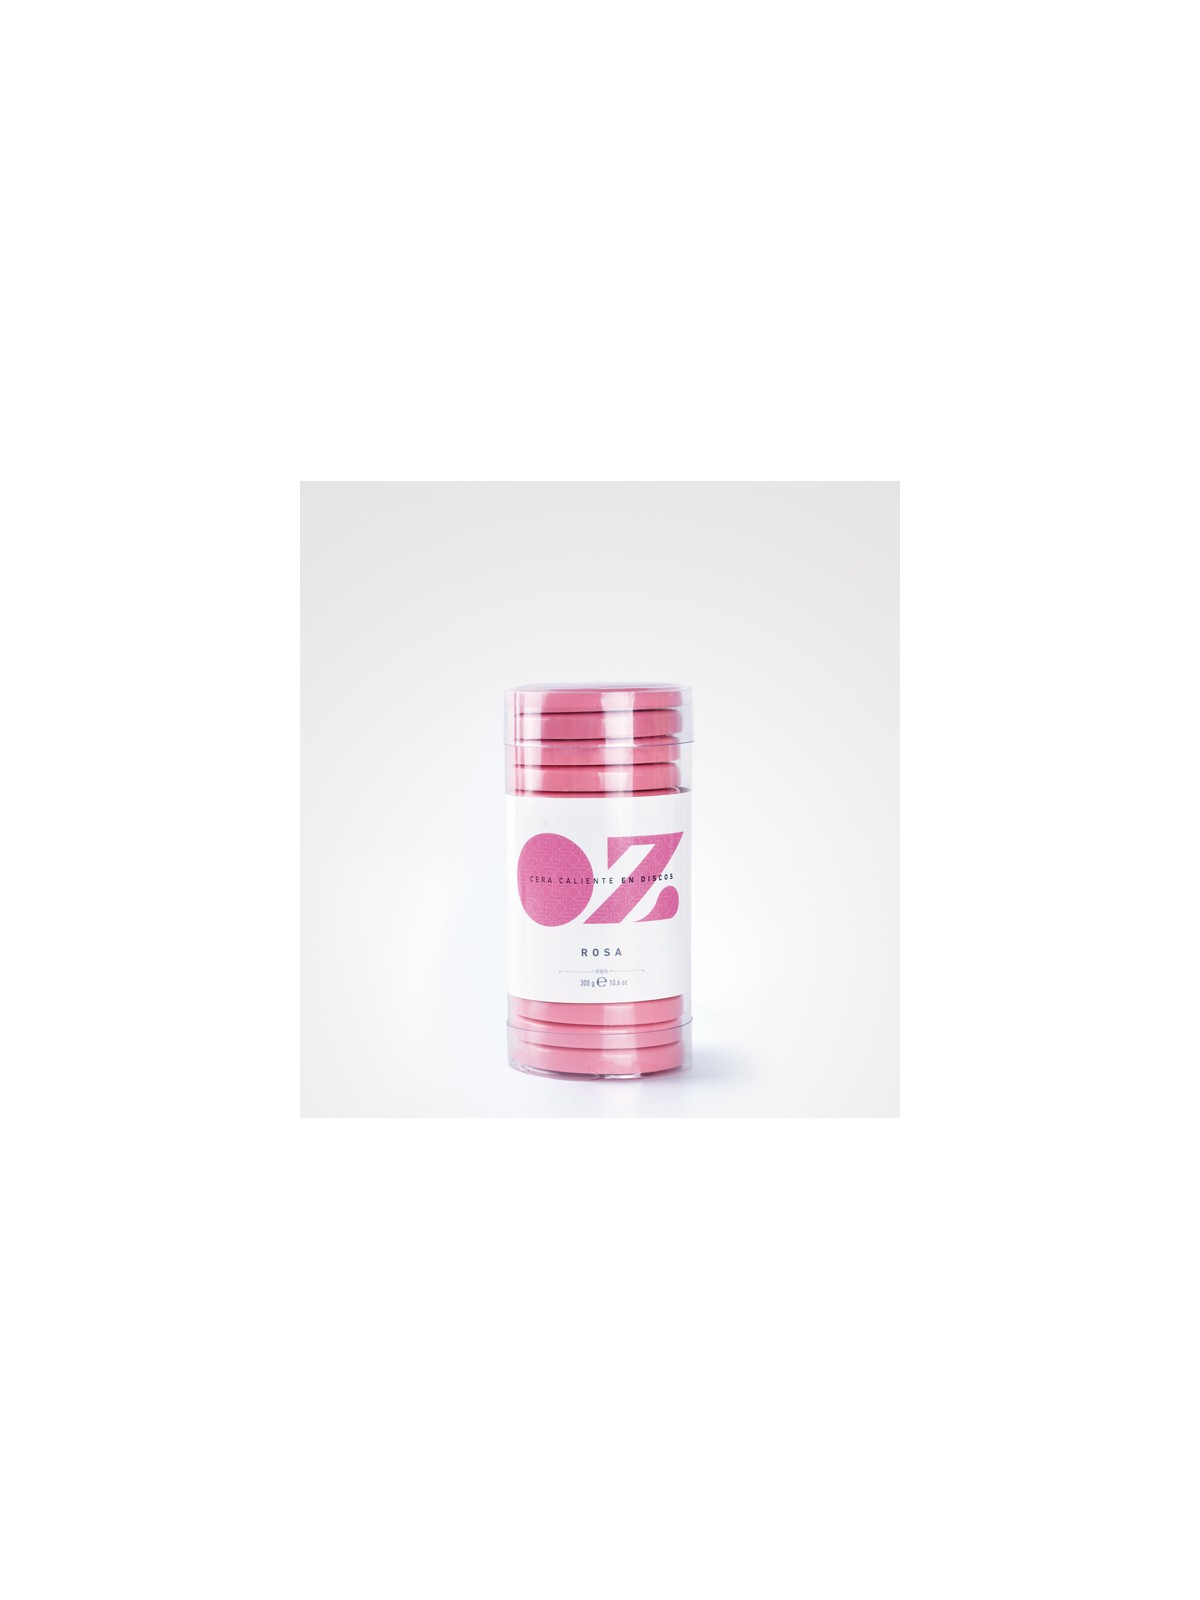 Comprar Cera discos rosa 300gr.- perfect beauty en Depilación por sólo 7,21 € o un precio específico de 6,49 € en Thalie Care